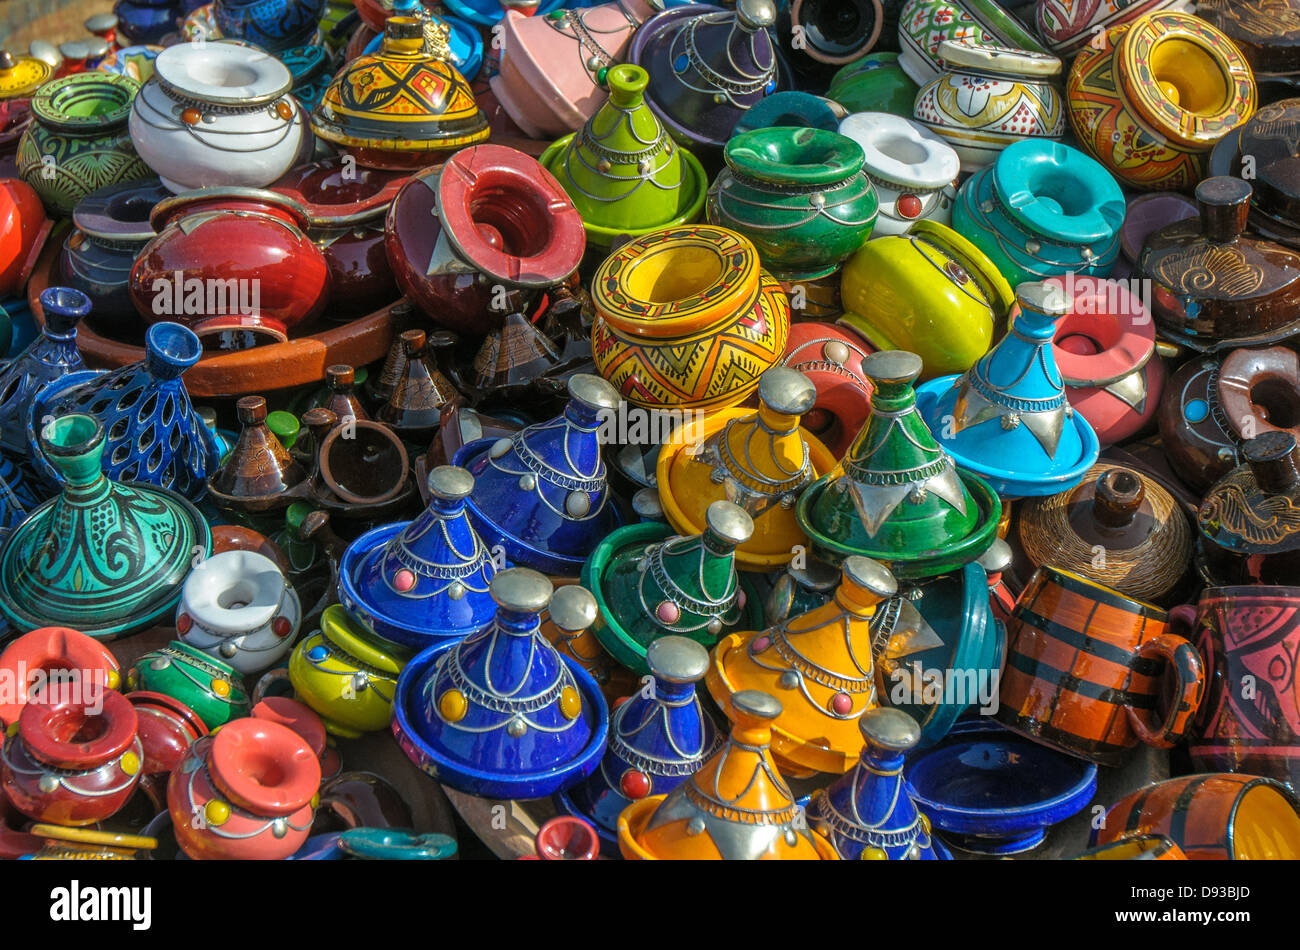 Tajines in the market, Morocco Stock Photo